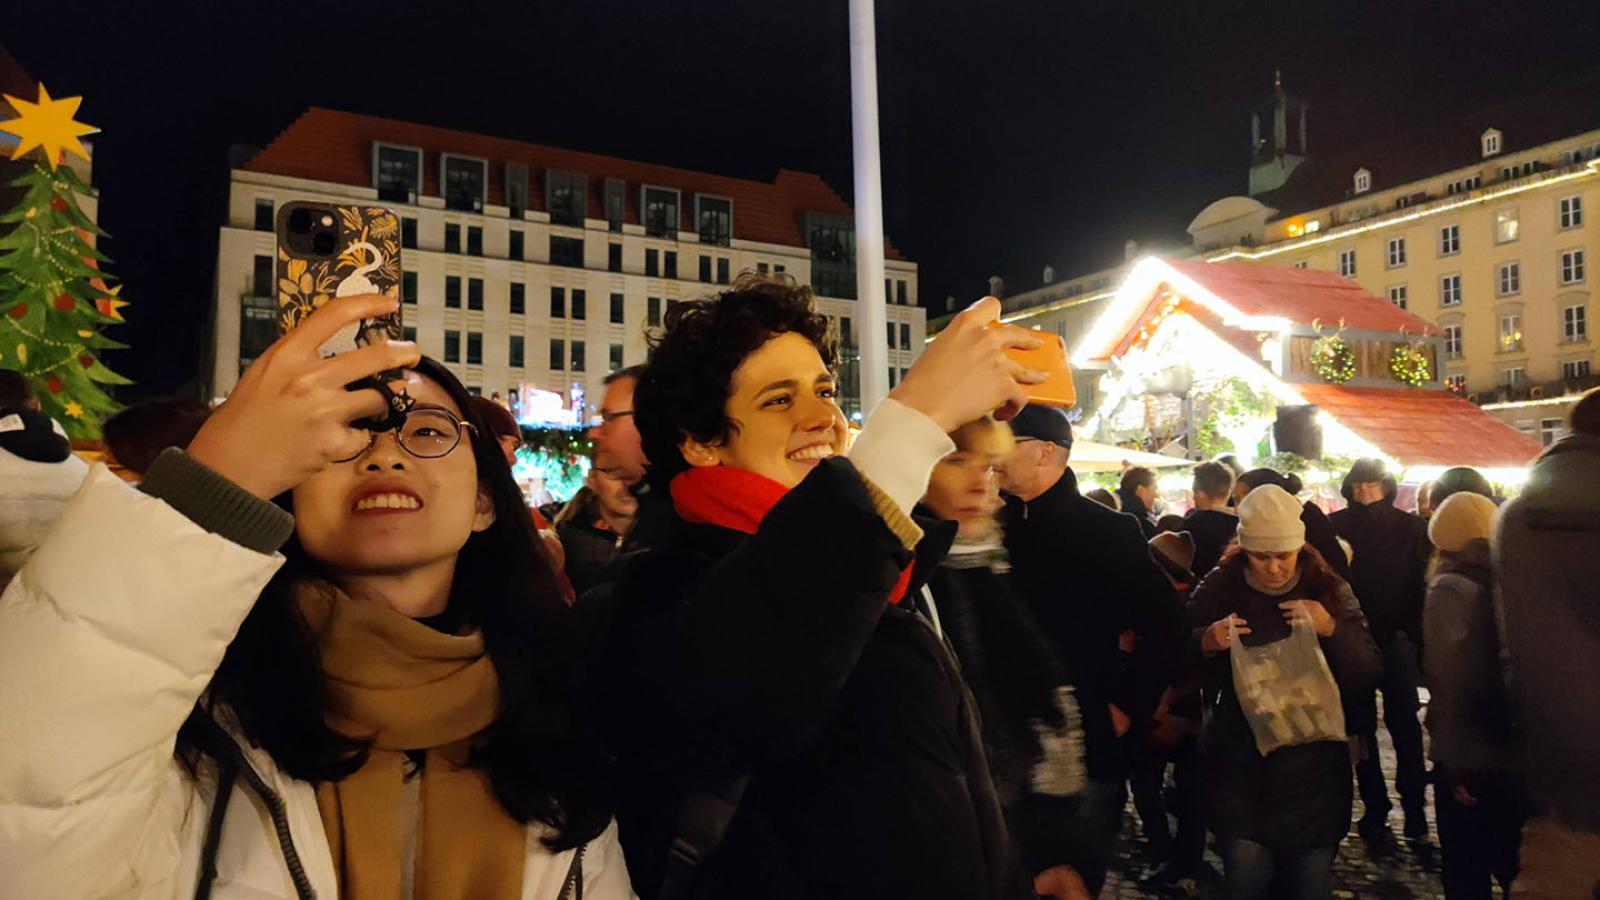 Zwei Personen stehen in der unteren linken Ecke des Bildes und halten ihre Handys in die Höhe als würden sie fotografieren. Sie stehen auf einem Weihnachtsmarkt. Der Himmel ist dunkel aber die Lichter vom Markt glänzen hell.